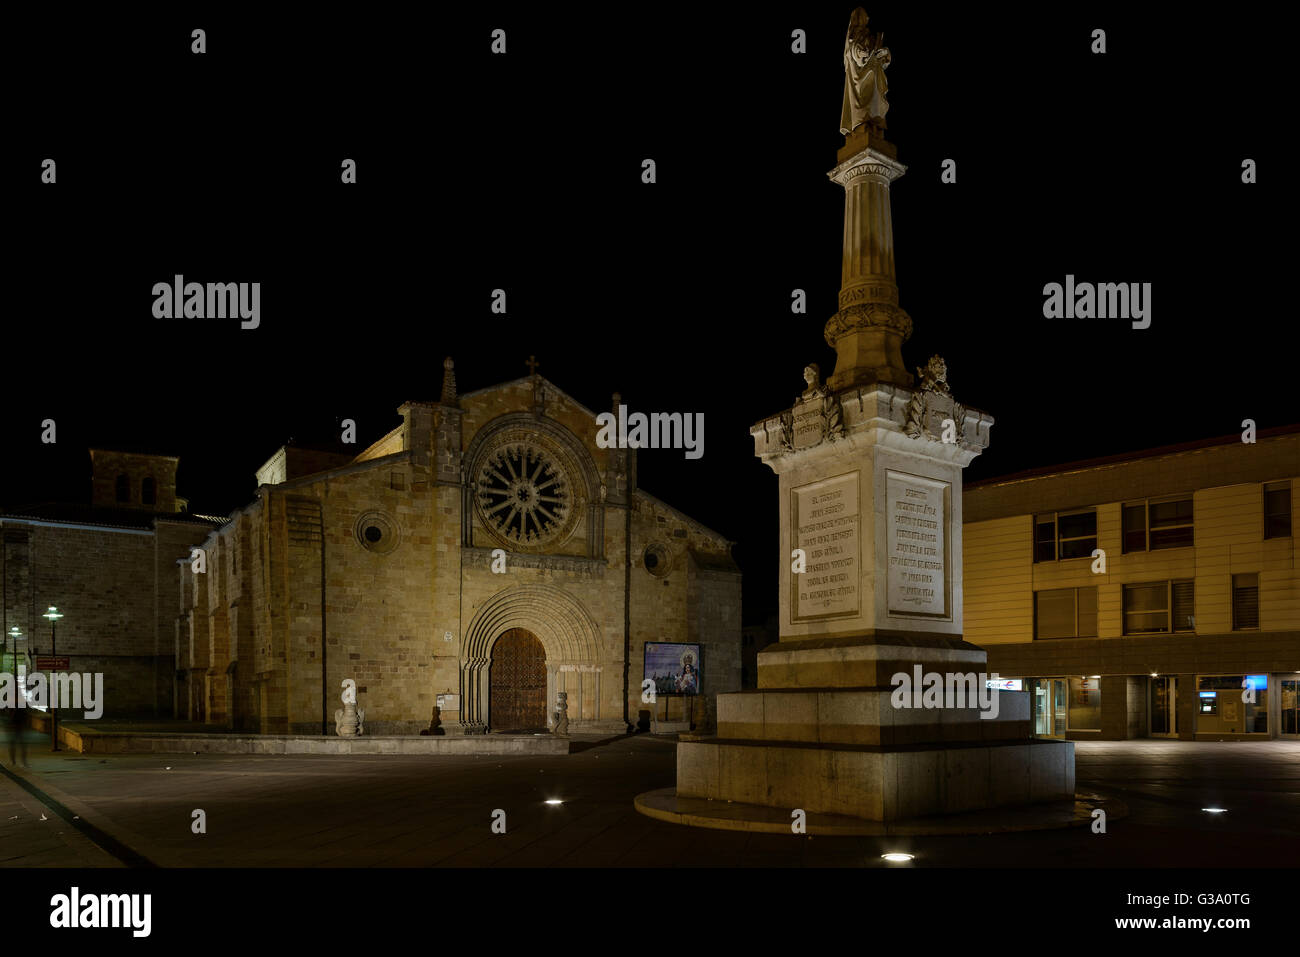 La Place de Santa Teresa, façade de l'église de San Pedro et porte principale. Avila, Castille et Leon, Espagne. Banque D'Images